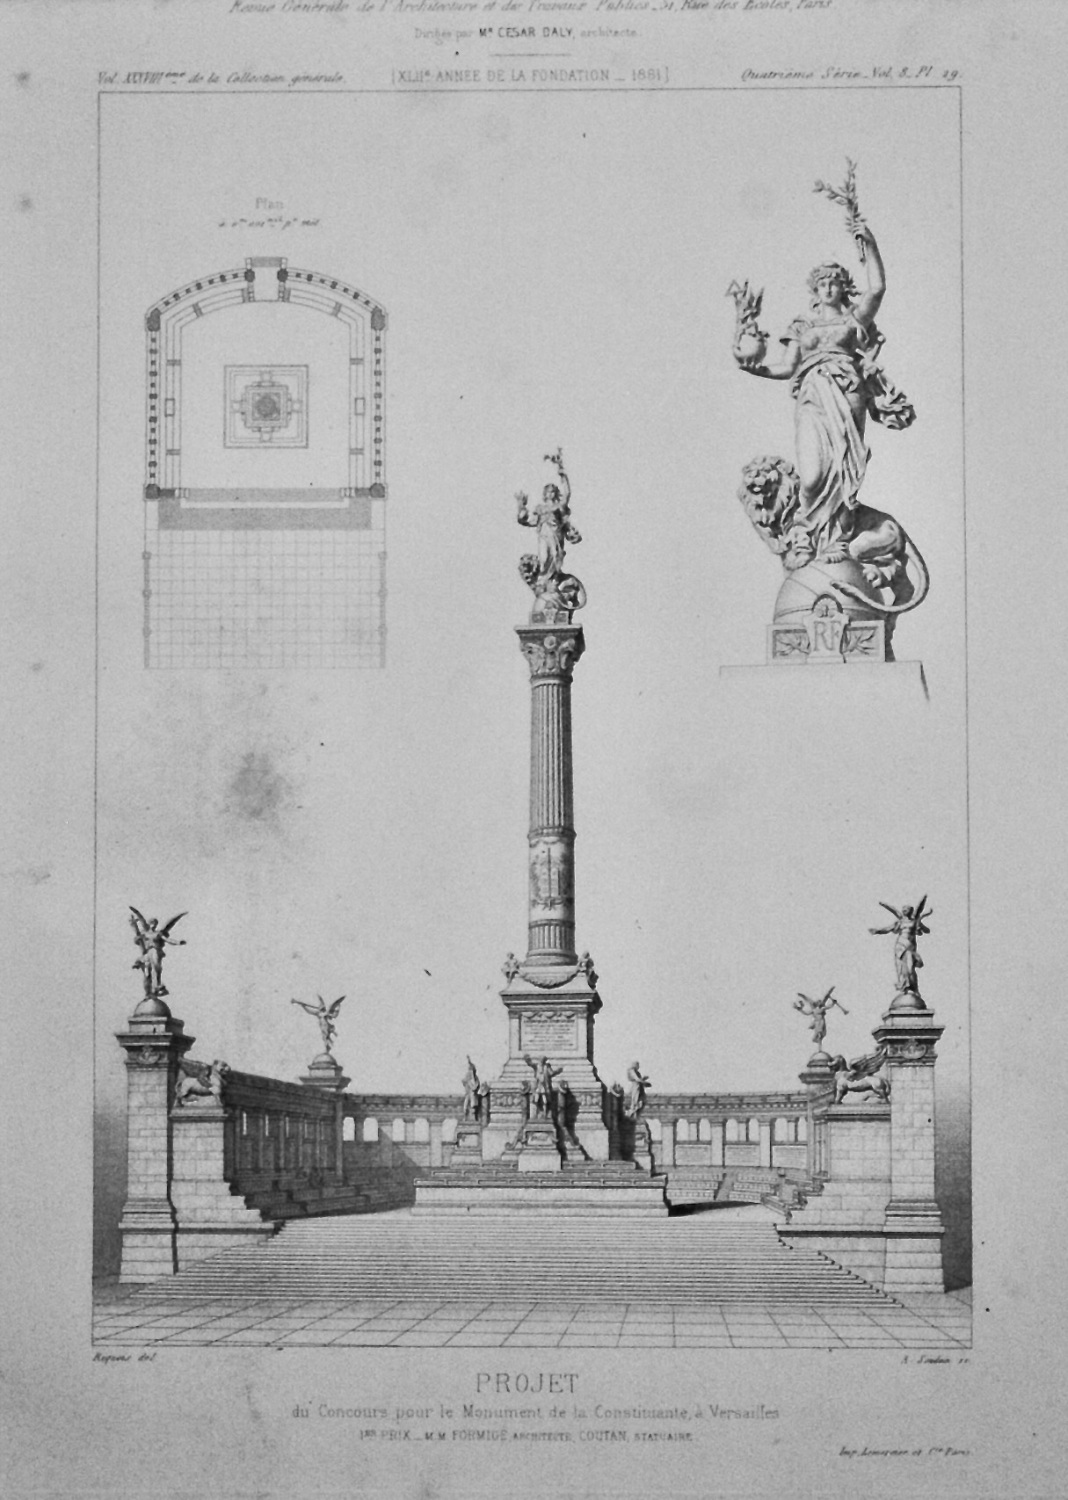 Project, du Concours pour le Monument de la Constituante, a Versailles.  18